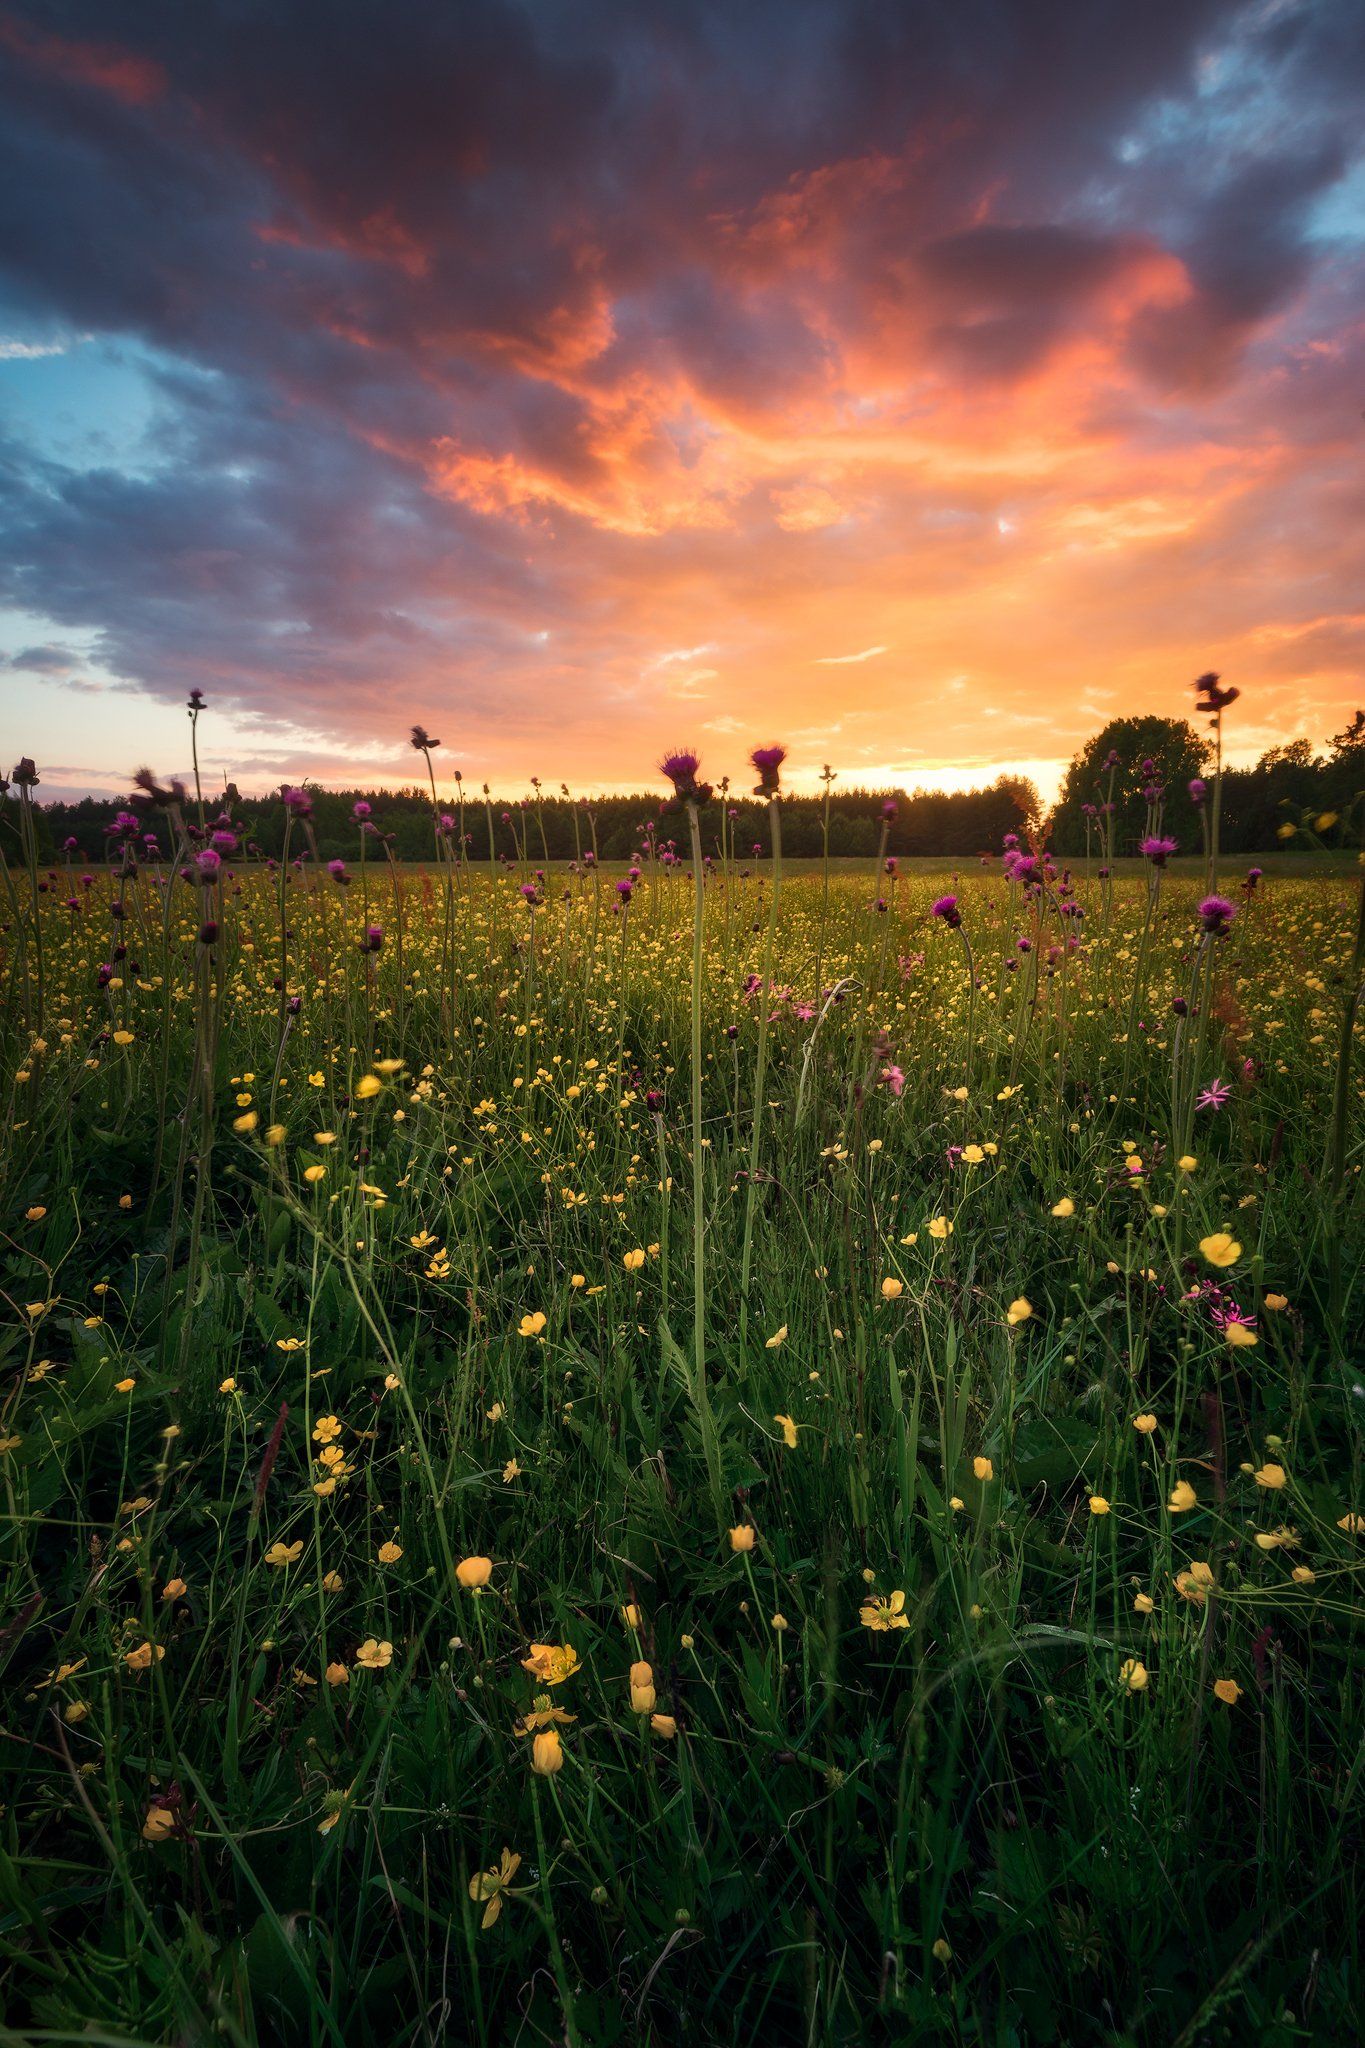 meadow spring wildflowers flowers sunset sky clouds colors mood poland podlasie, Maciej Warchoł